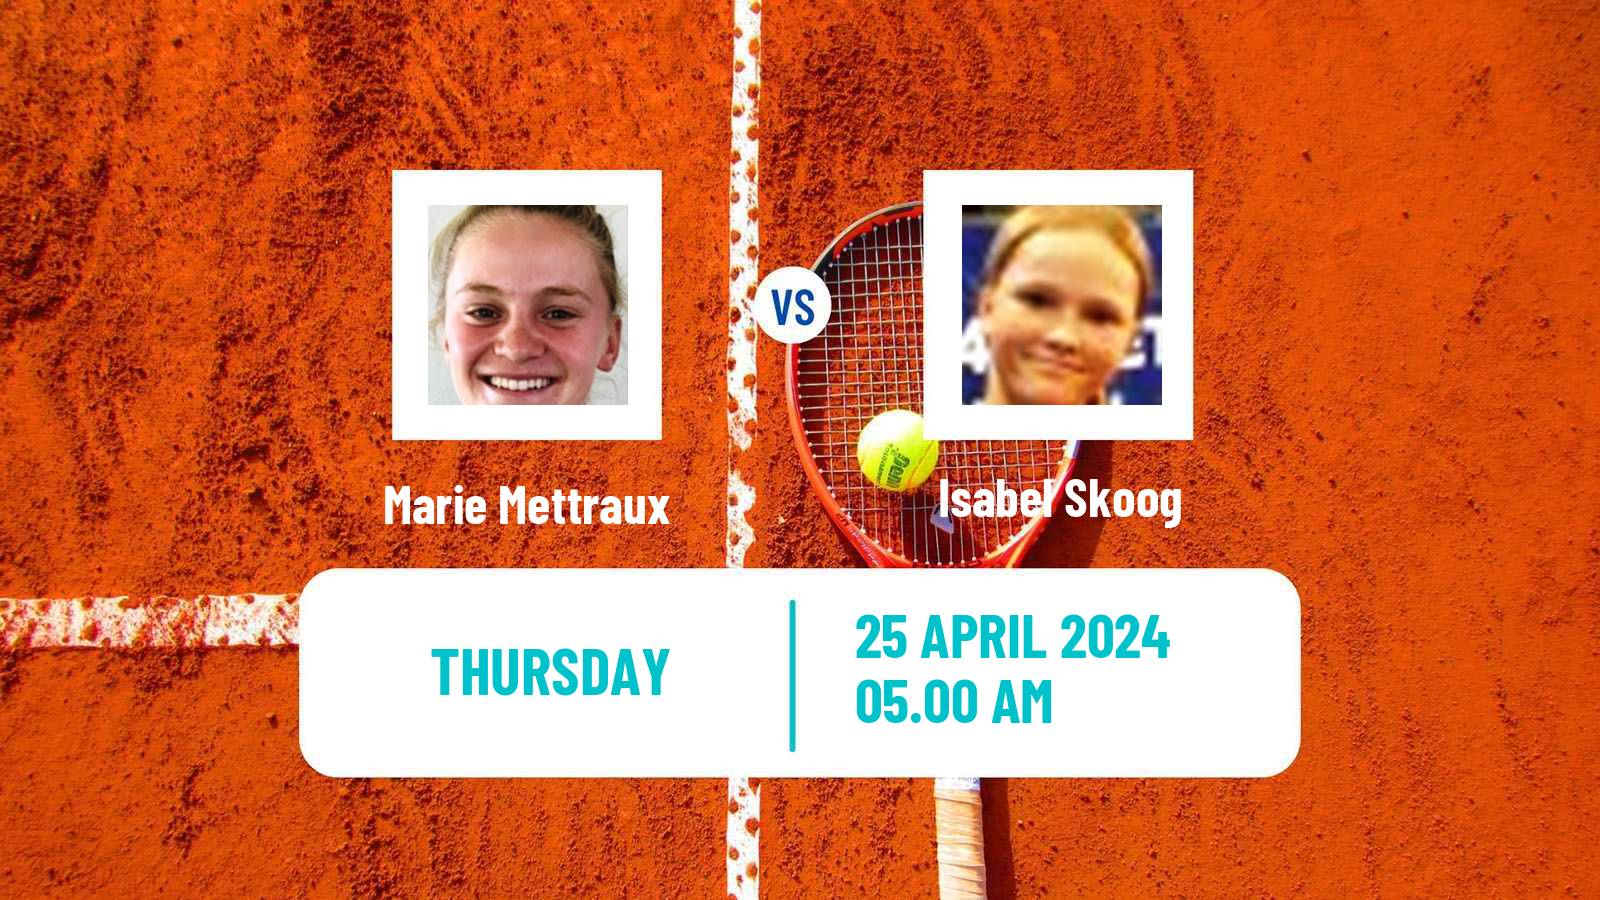 Tennis ITF W15 Telde 4 Women Marie Mettraux - Isabel Skoog